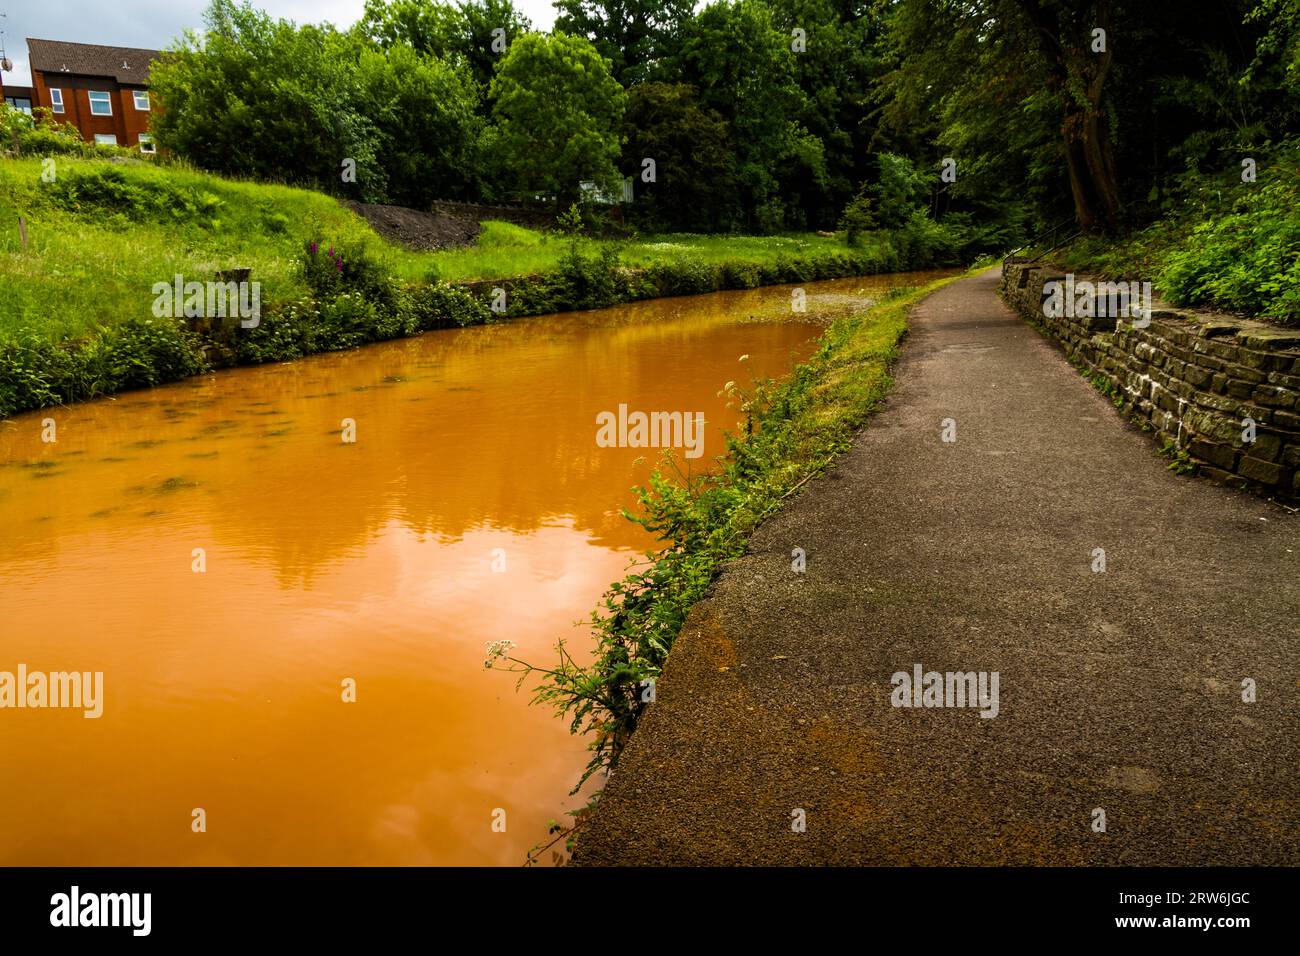 Trent und Mersey Canal, Kidsgrove, Newcastle-under-Lyme. Das Wasser ist orange, denn wenn sich Ton im Harecastle-Tunnel ablagert, sieht man die Landschaft von fr Stockfoto